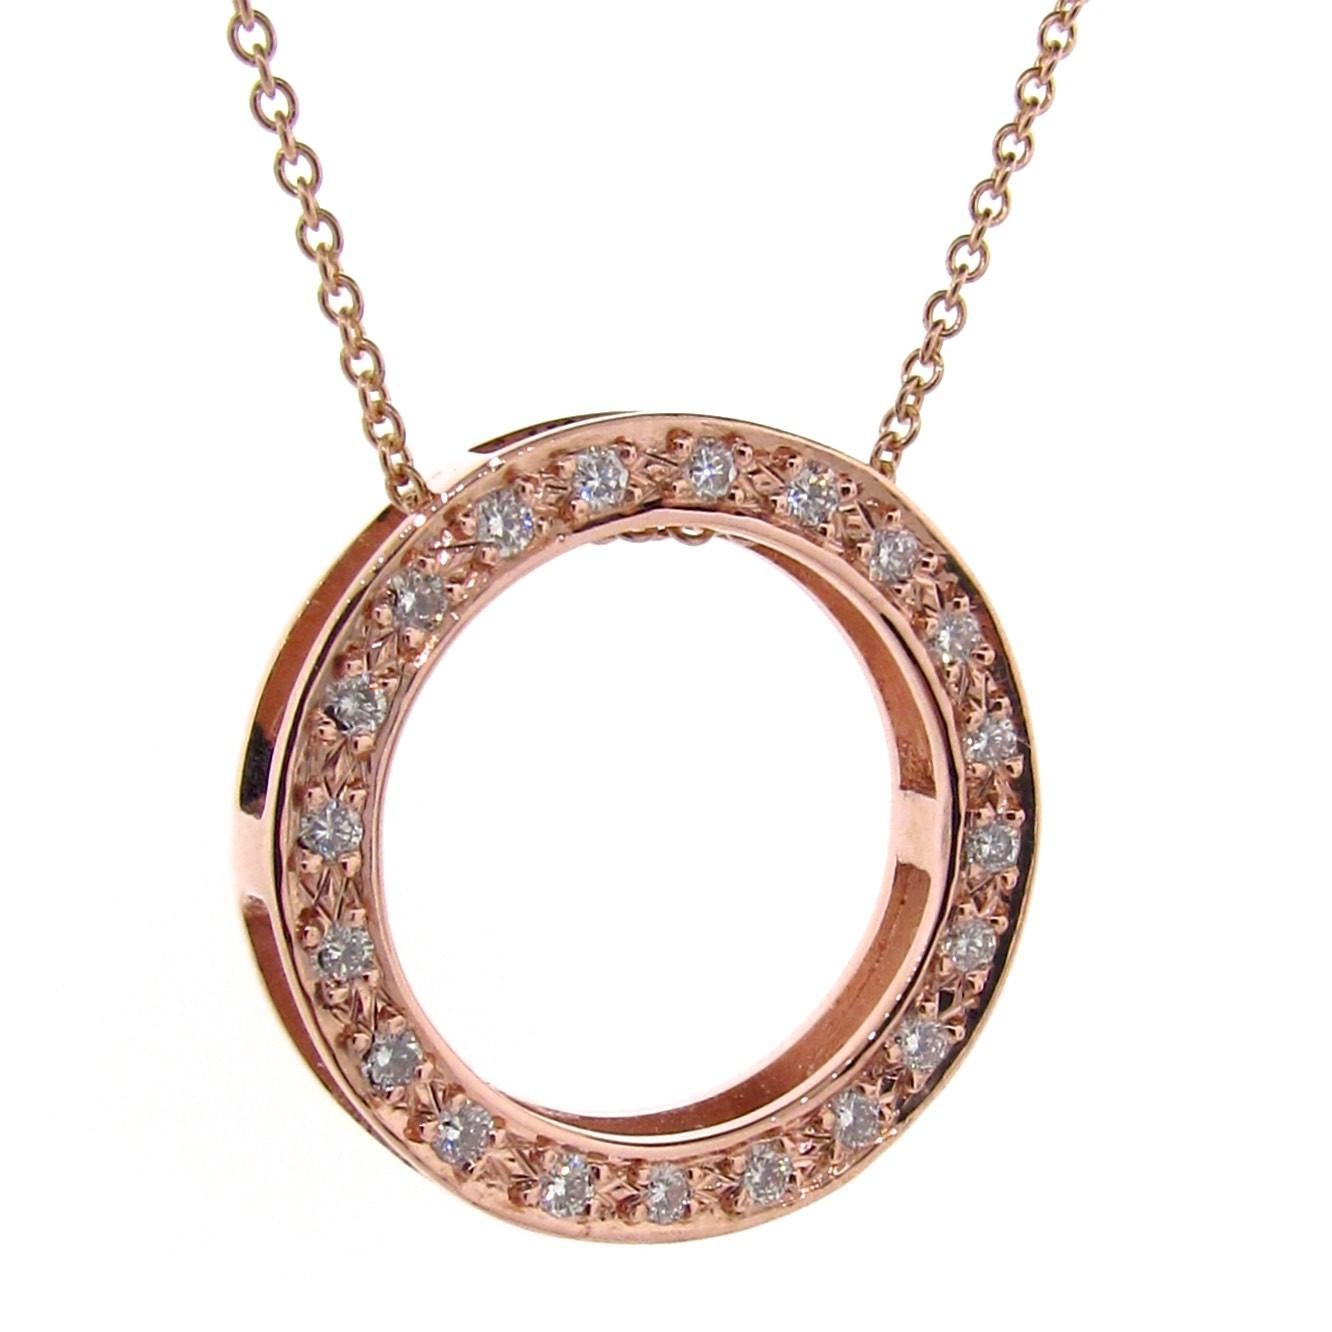 Die massive 9k Rose Gold White Diamond Eternity Circle of Life Halskette ist ein vielseitiges und bedeutungsvolles Stück aus der Symbolism Collection. Dieser Anhänger kann auf zwei verschiedene Arten getragen werden, entweder mit der Diamantseite